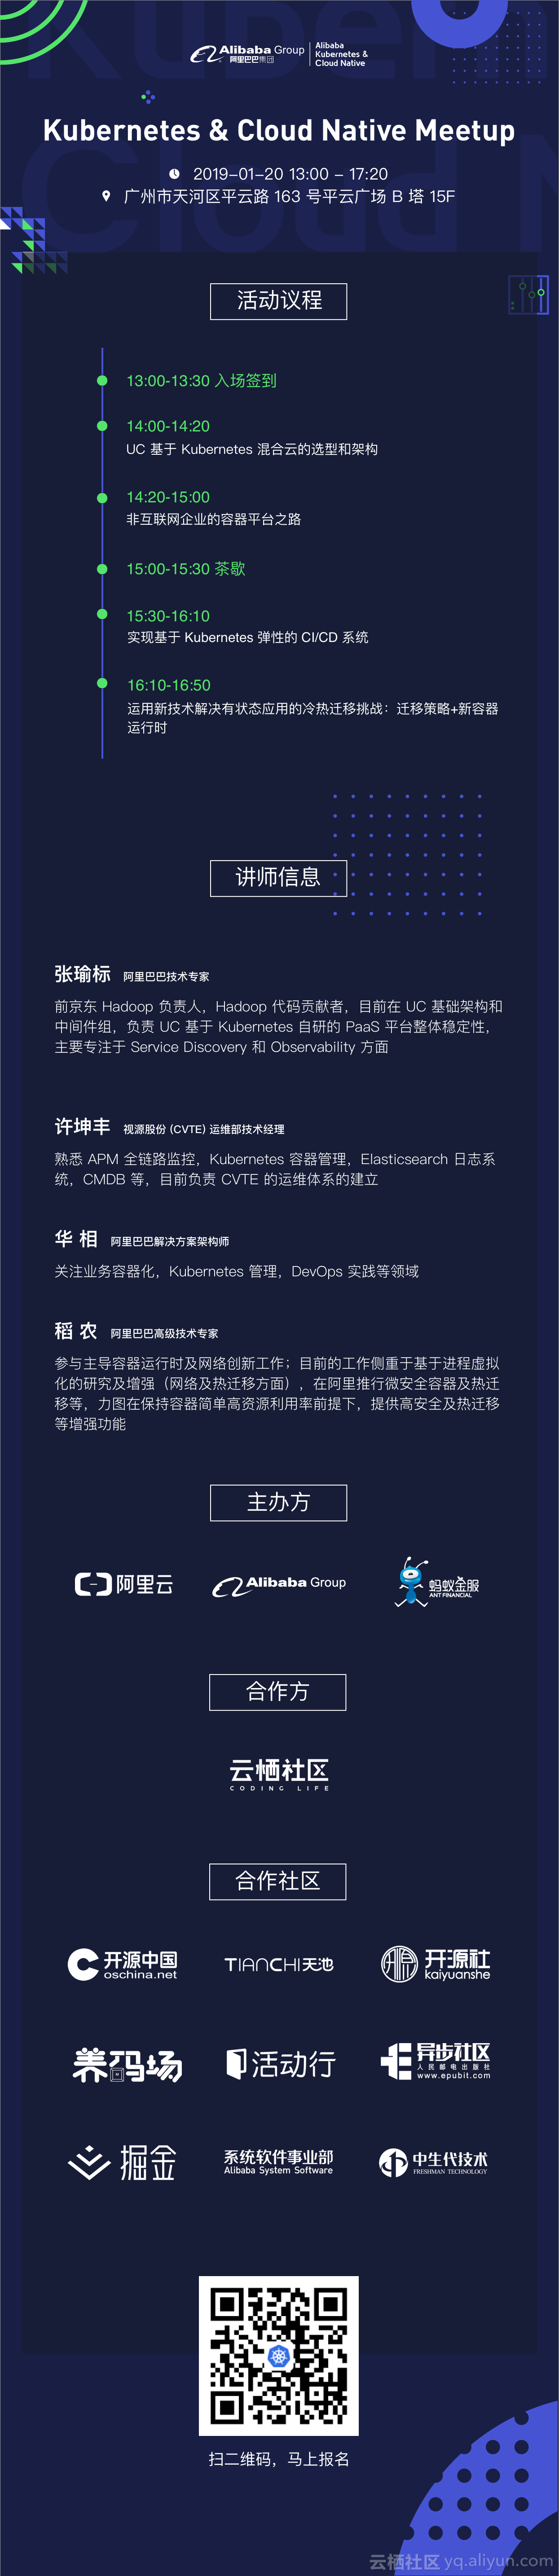 【1-20 报名中】Kubernetes and Cloud Native Meetup 广州站
    ...